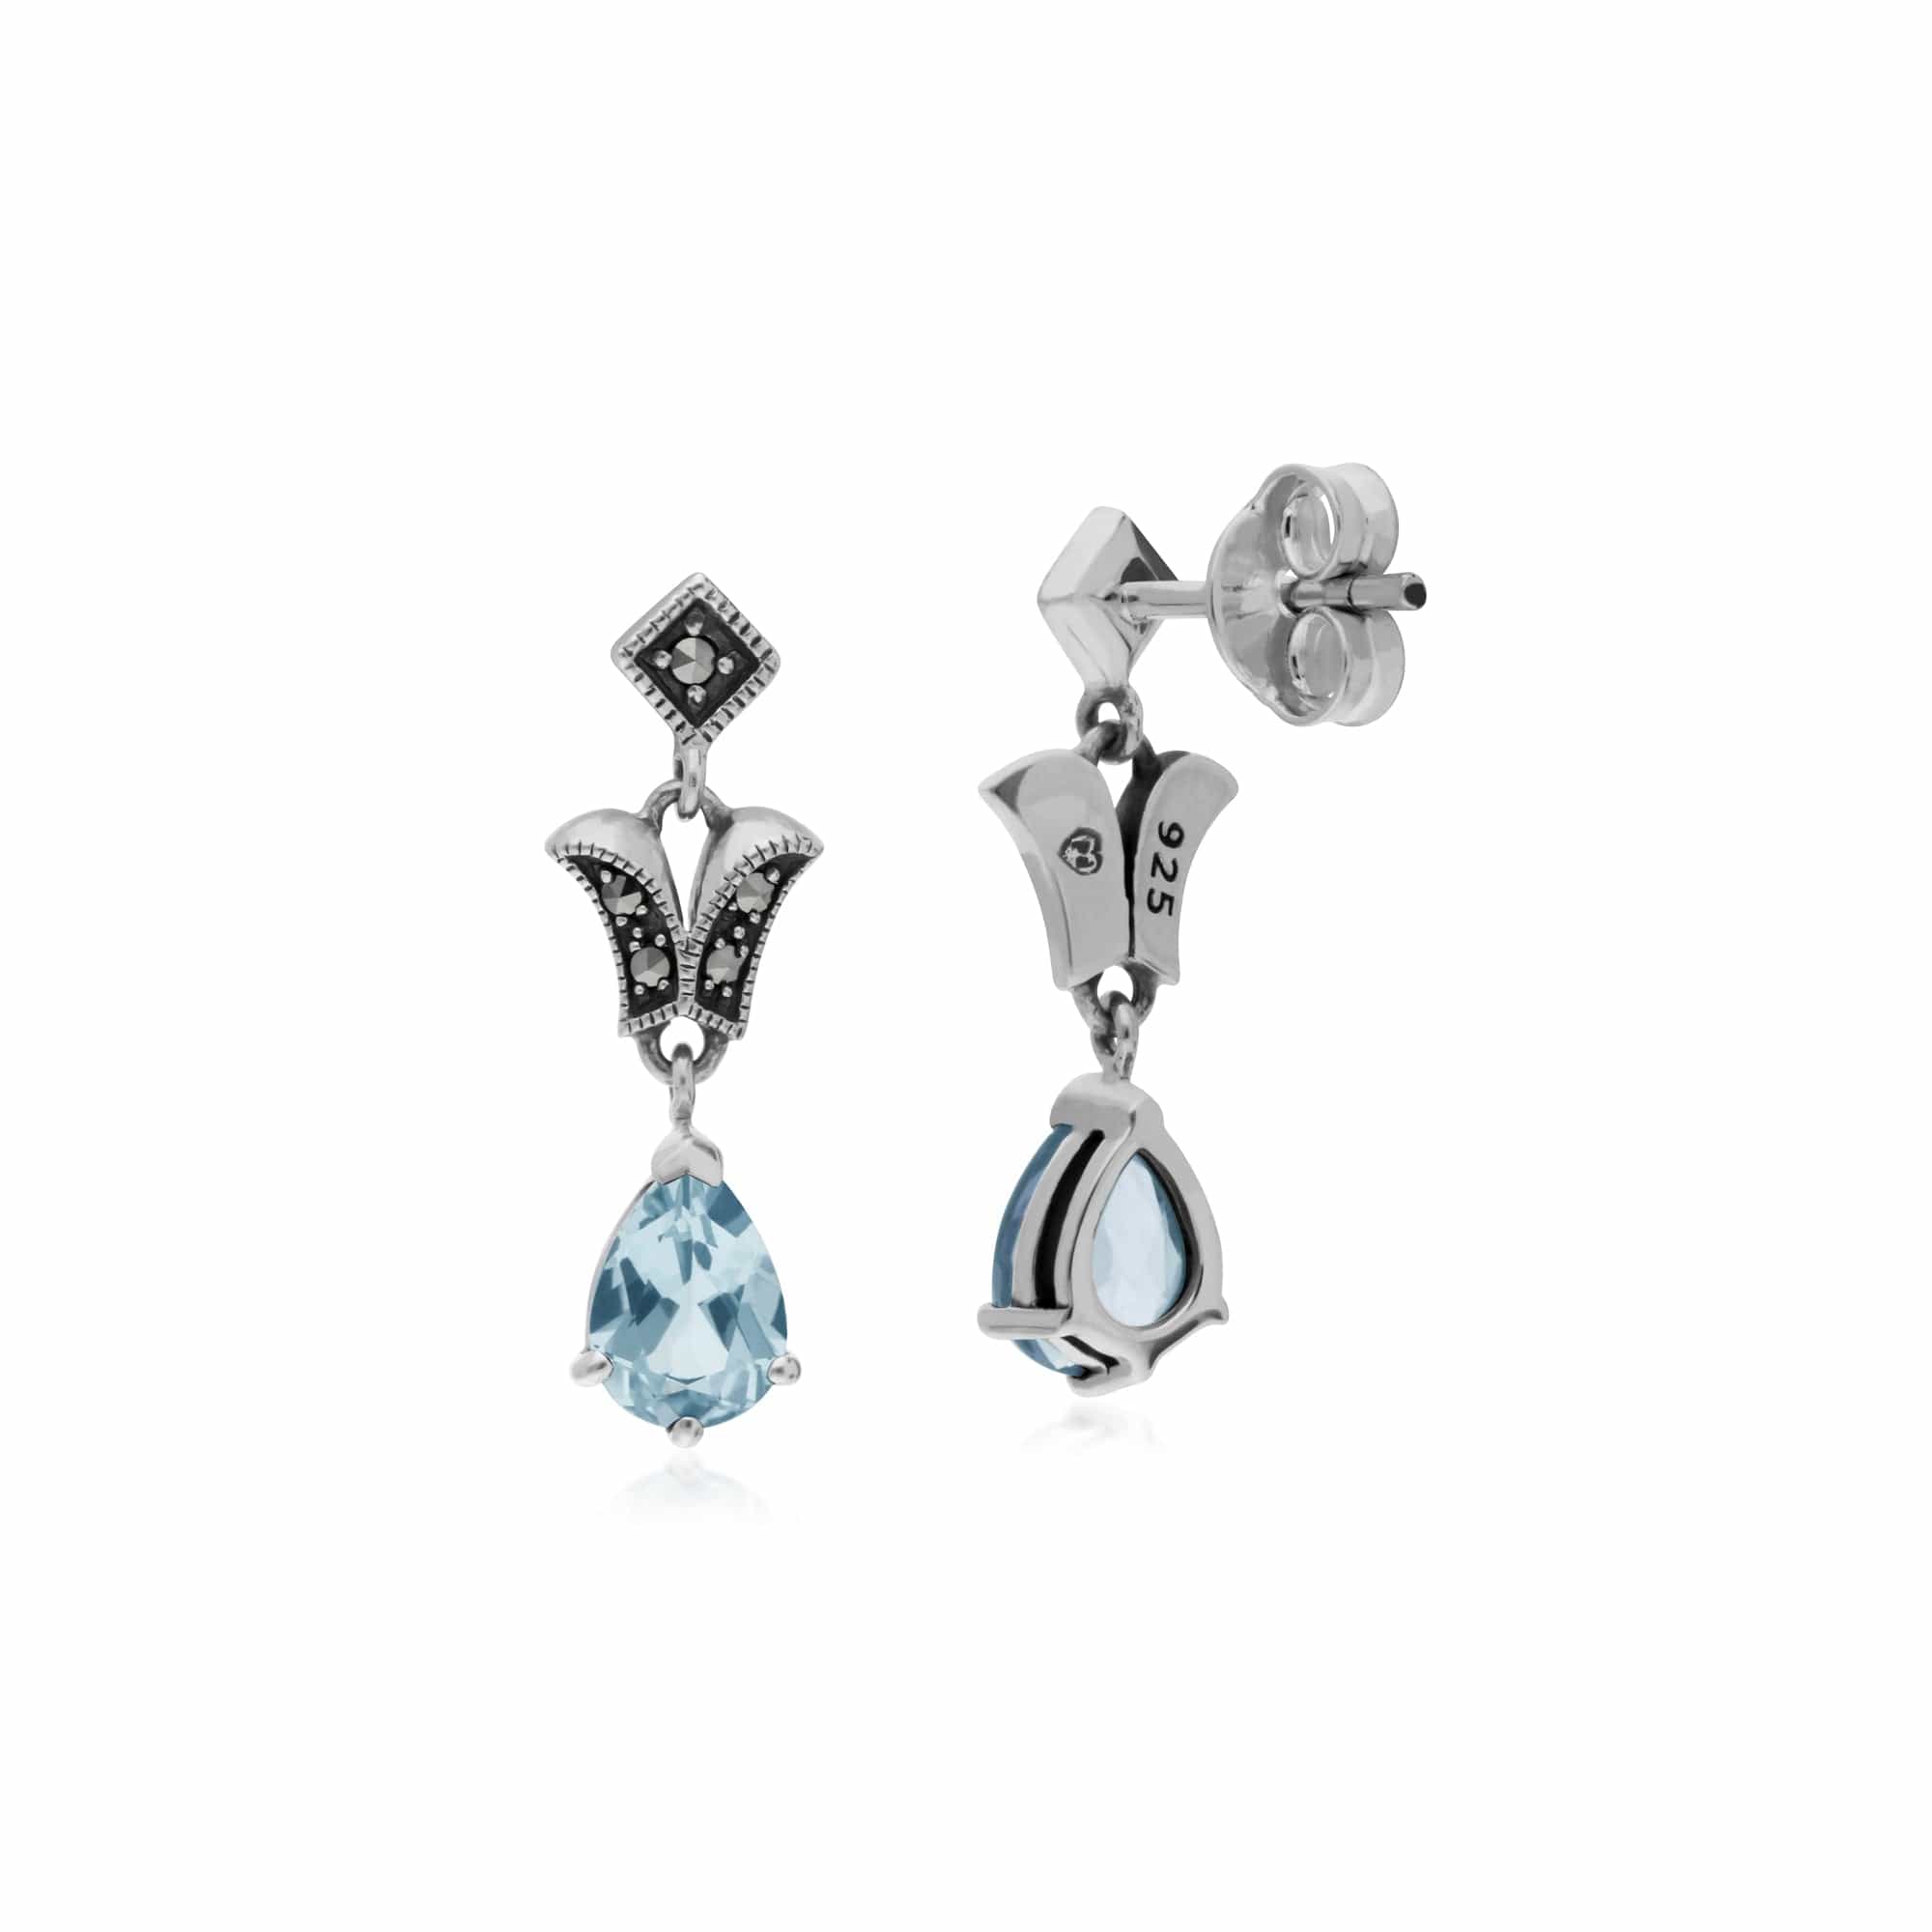 214E859602925 Art Nouveau Style Pear Blue Topaz & Marcasite Drop Earrings in 925 Sterling Silver 2